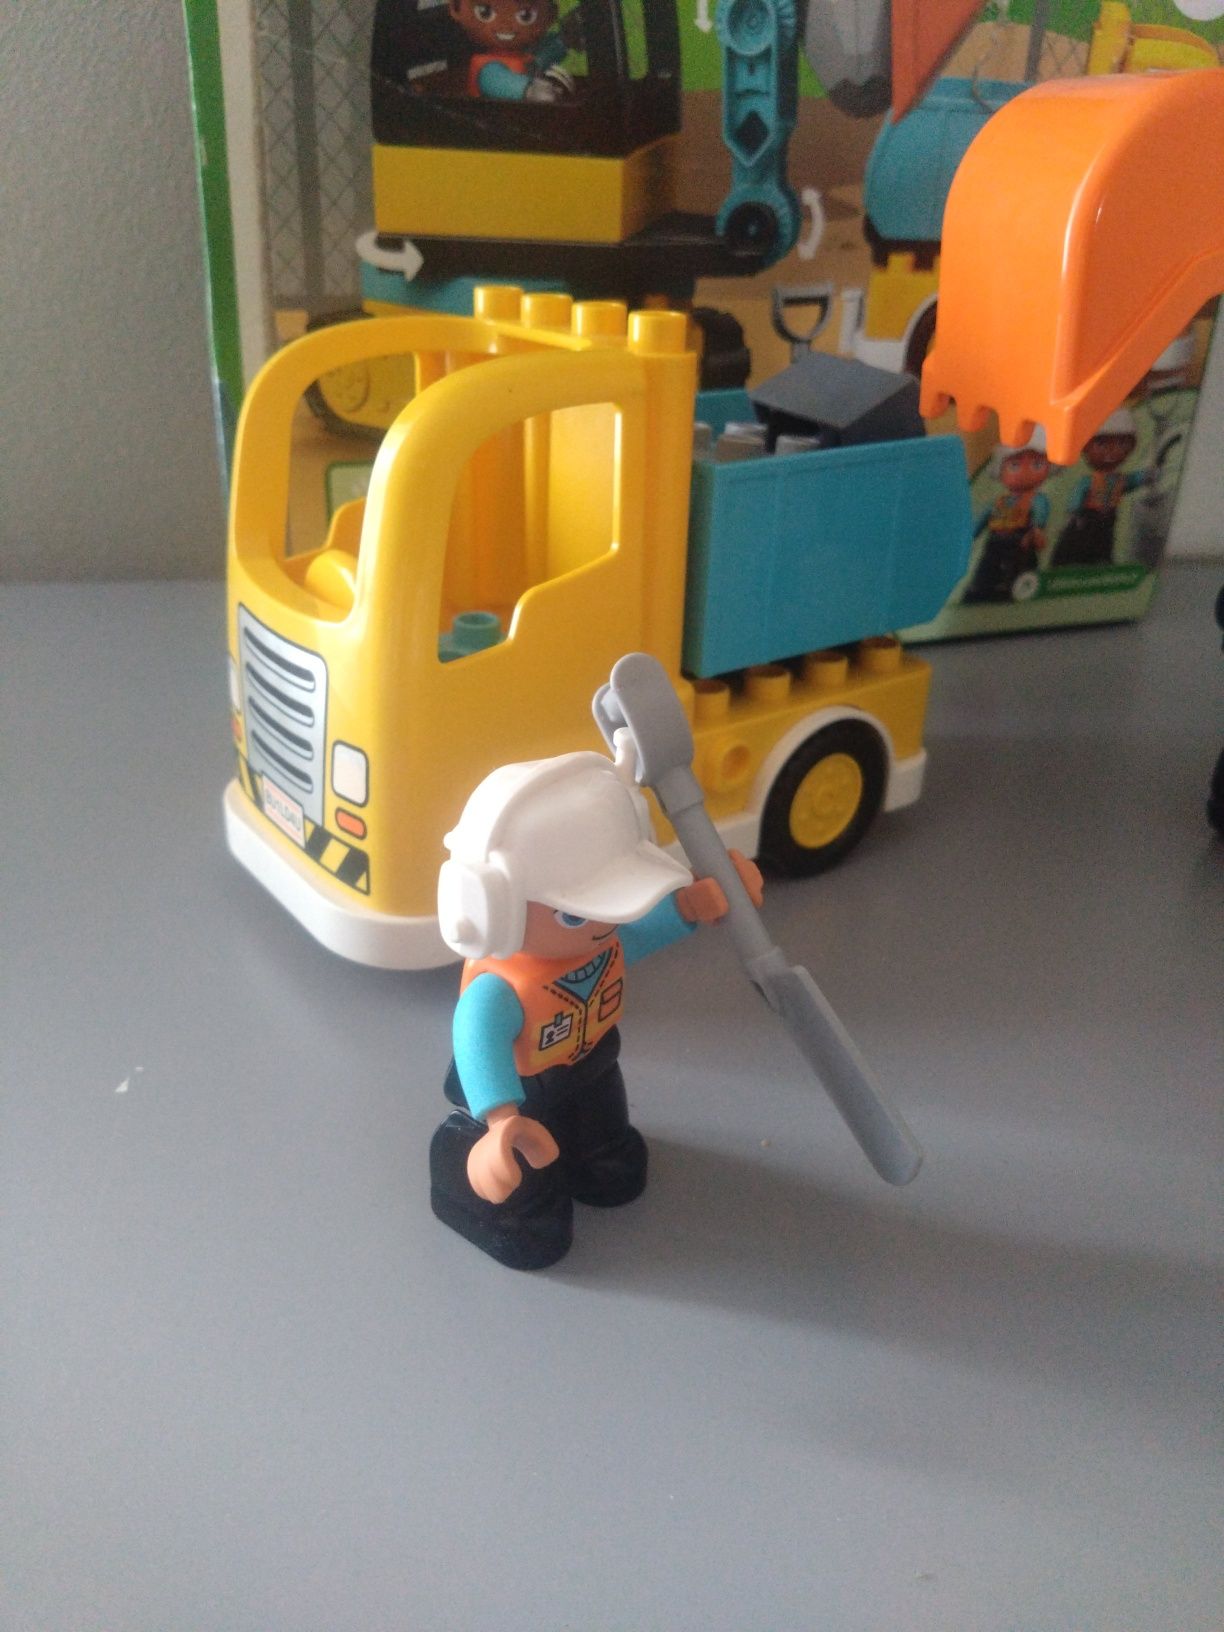 LEGO DUPLO 10931 Ciężarówka i koparka gąsienicowe